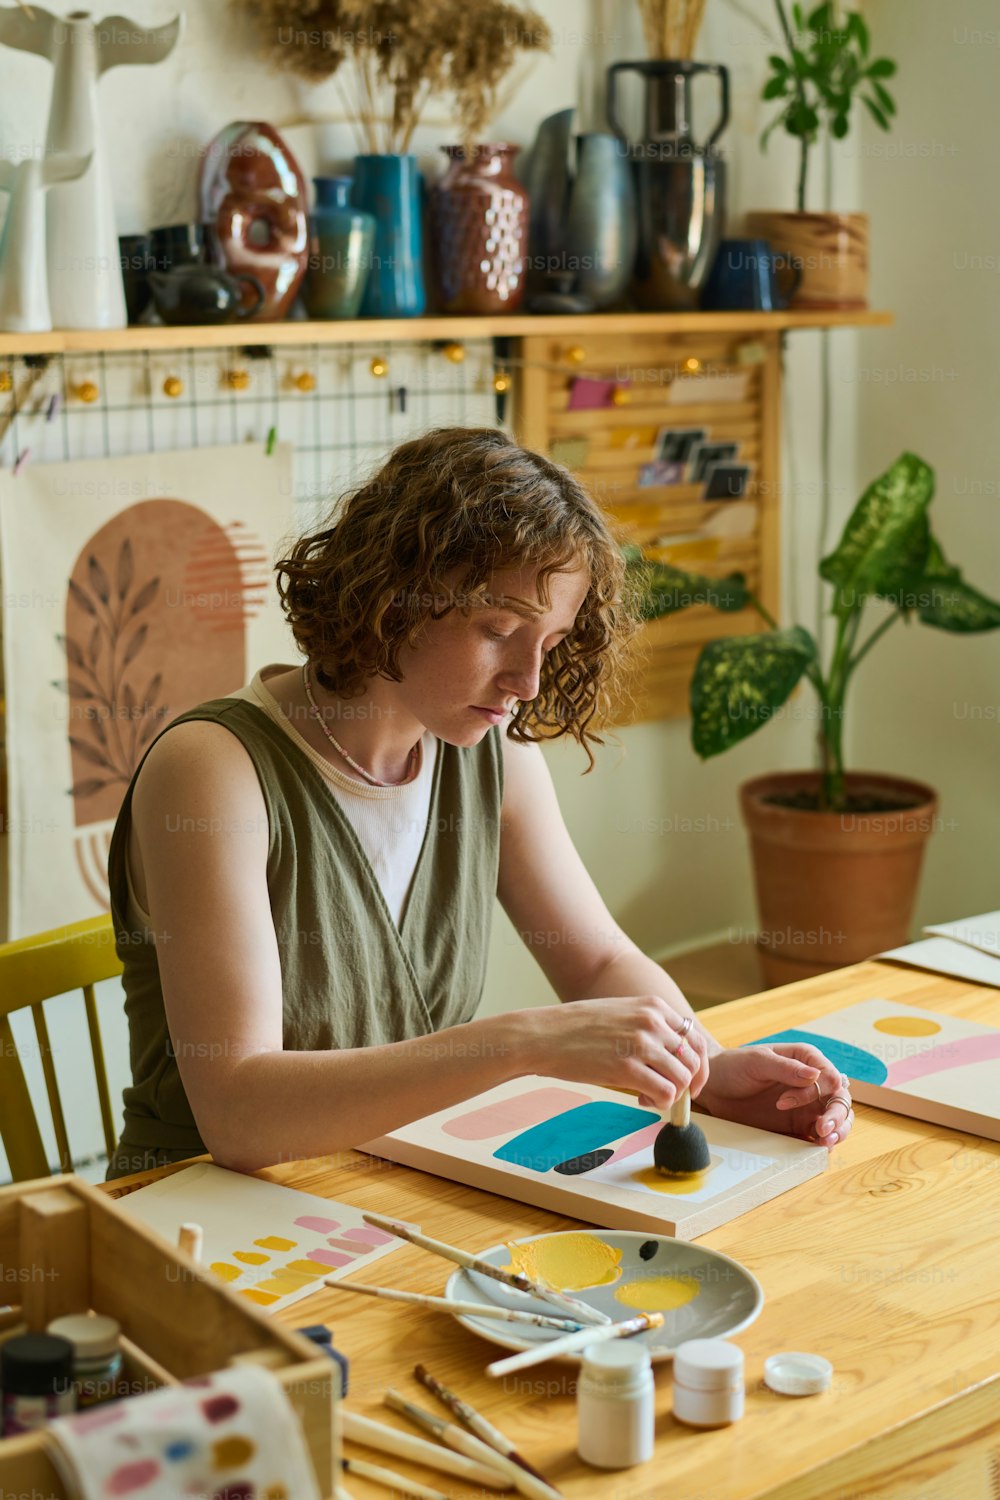 Artista femminile creativa in abbigliamento casual che utilizza la spugna per l'applicazione del colore su carta mentre lavora su un nuovo dipinto astratto in officina